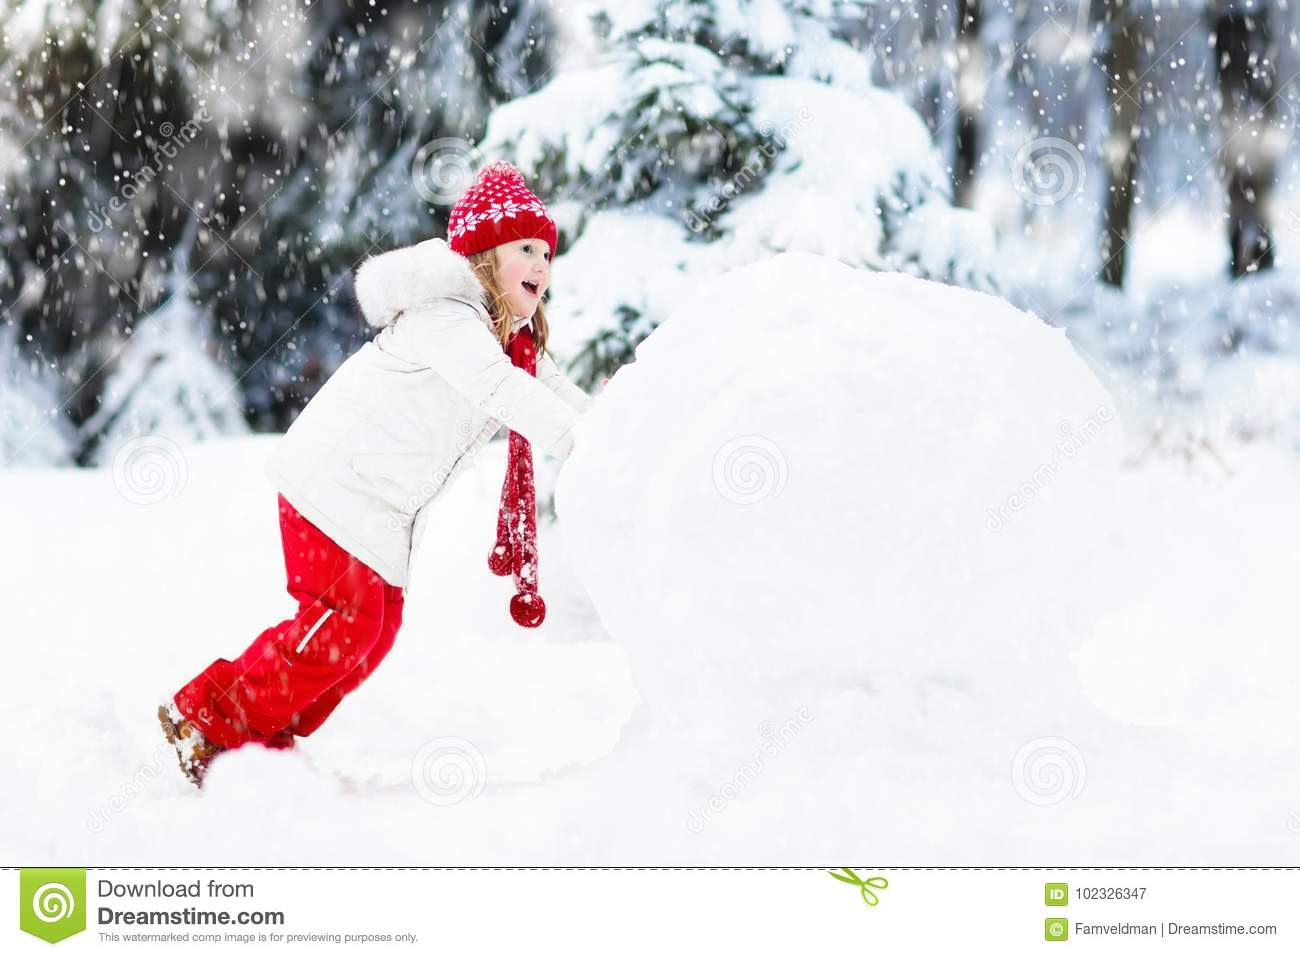 Kinder, Die Schneemann Errichten Kinder Im Schnee Antreiben In Einen ganzes Bilder Kinder Im Schnee